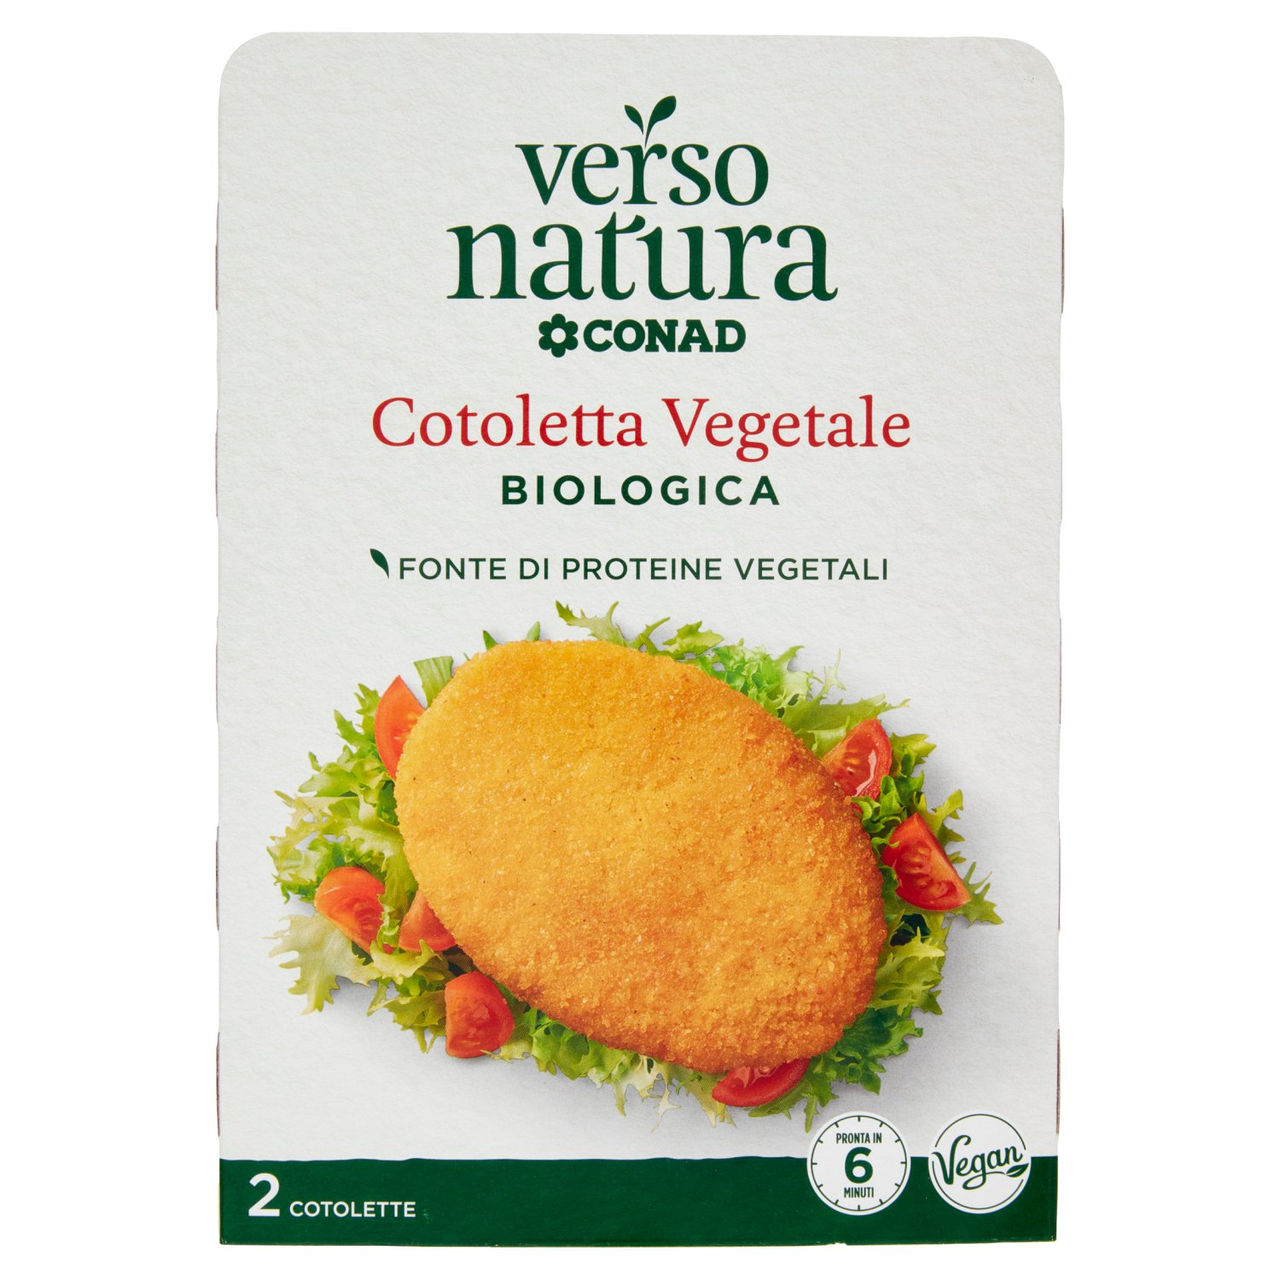 CONAD VERSO NATURA Cotoletta Vegetale Biologica 2 Cotolette 160 g